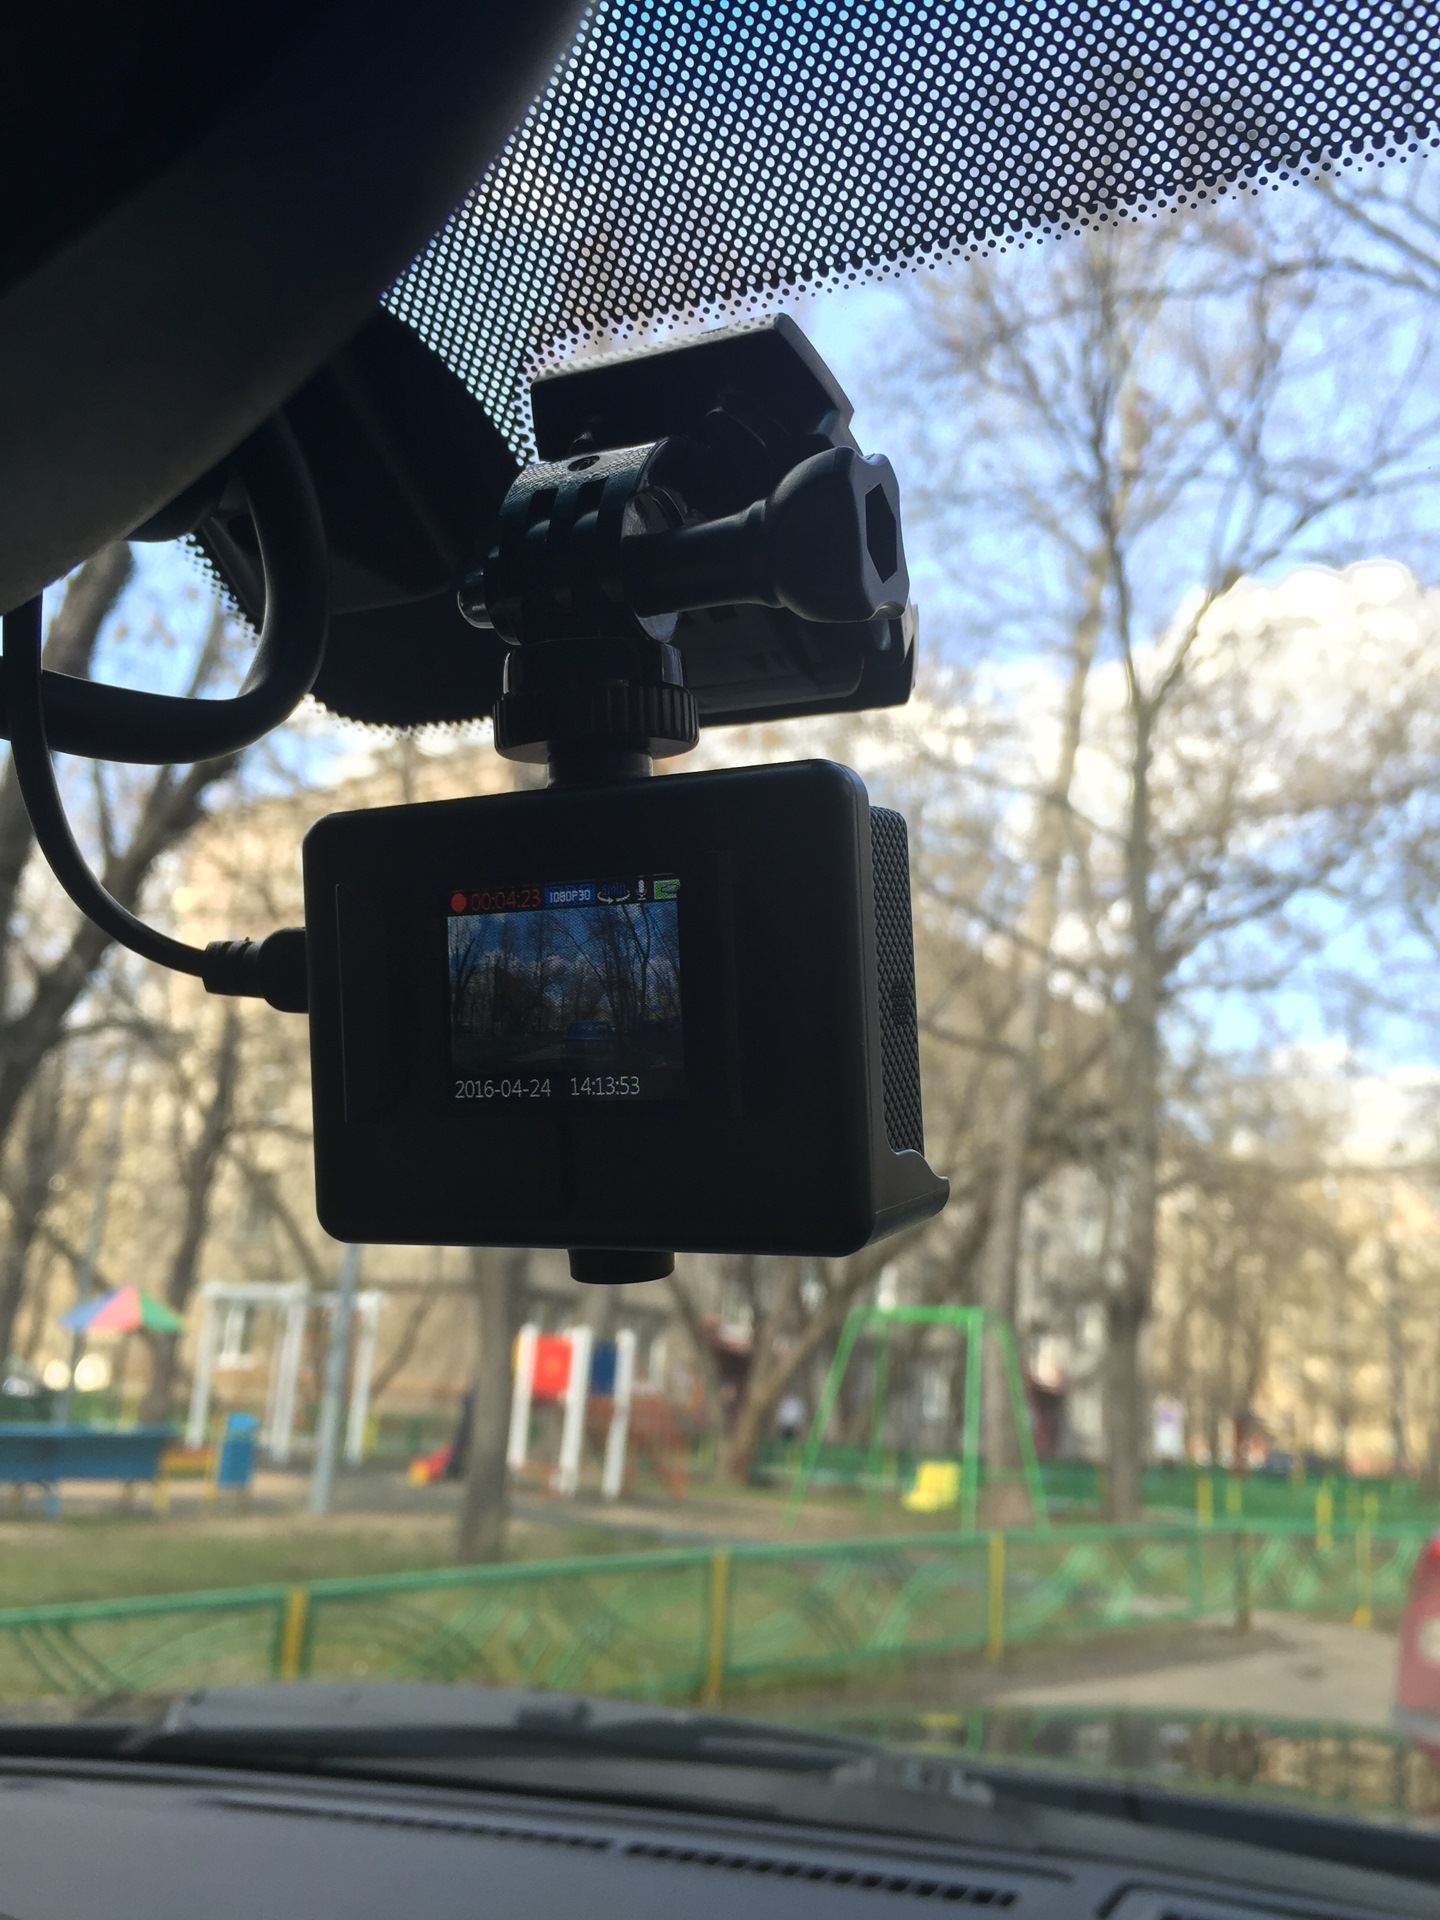 SJ Cam SJ4000 WiFi – обзор экшен-видеокамеры по доступной цене